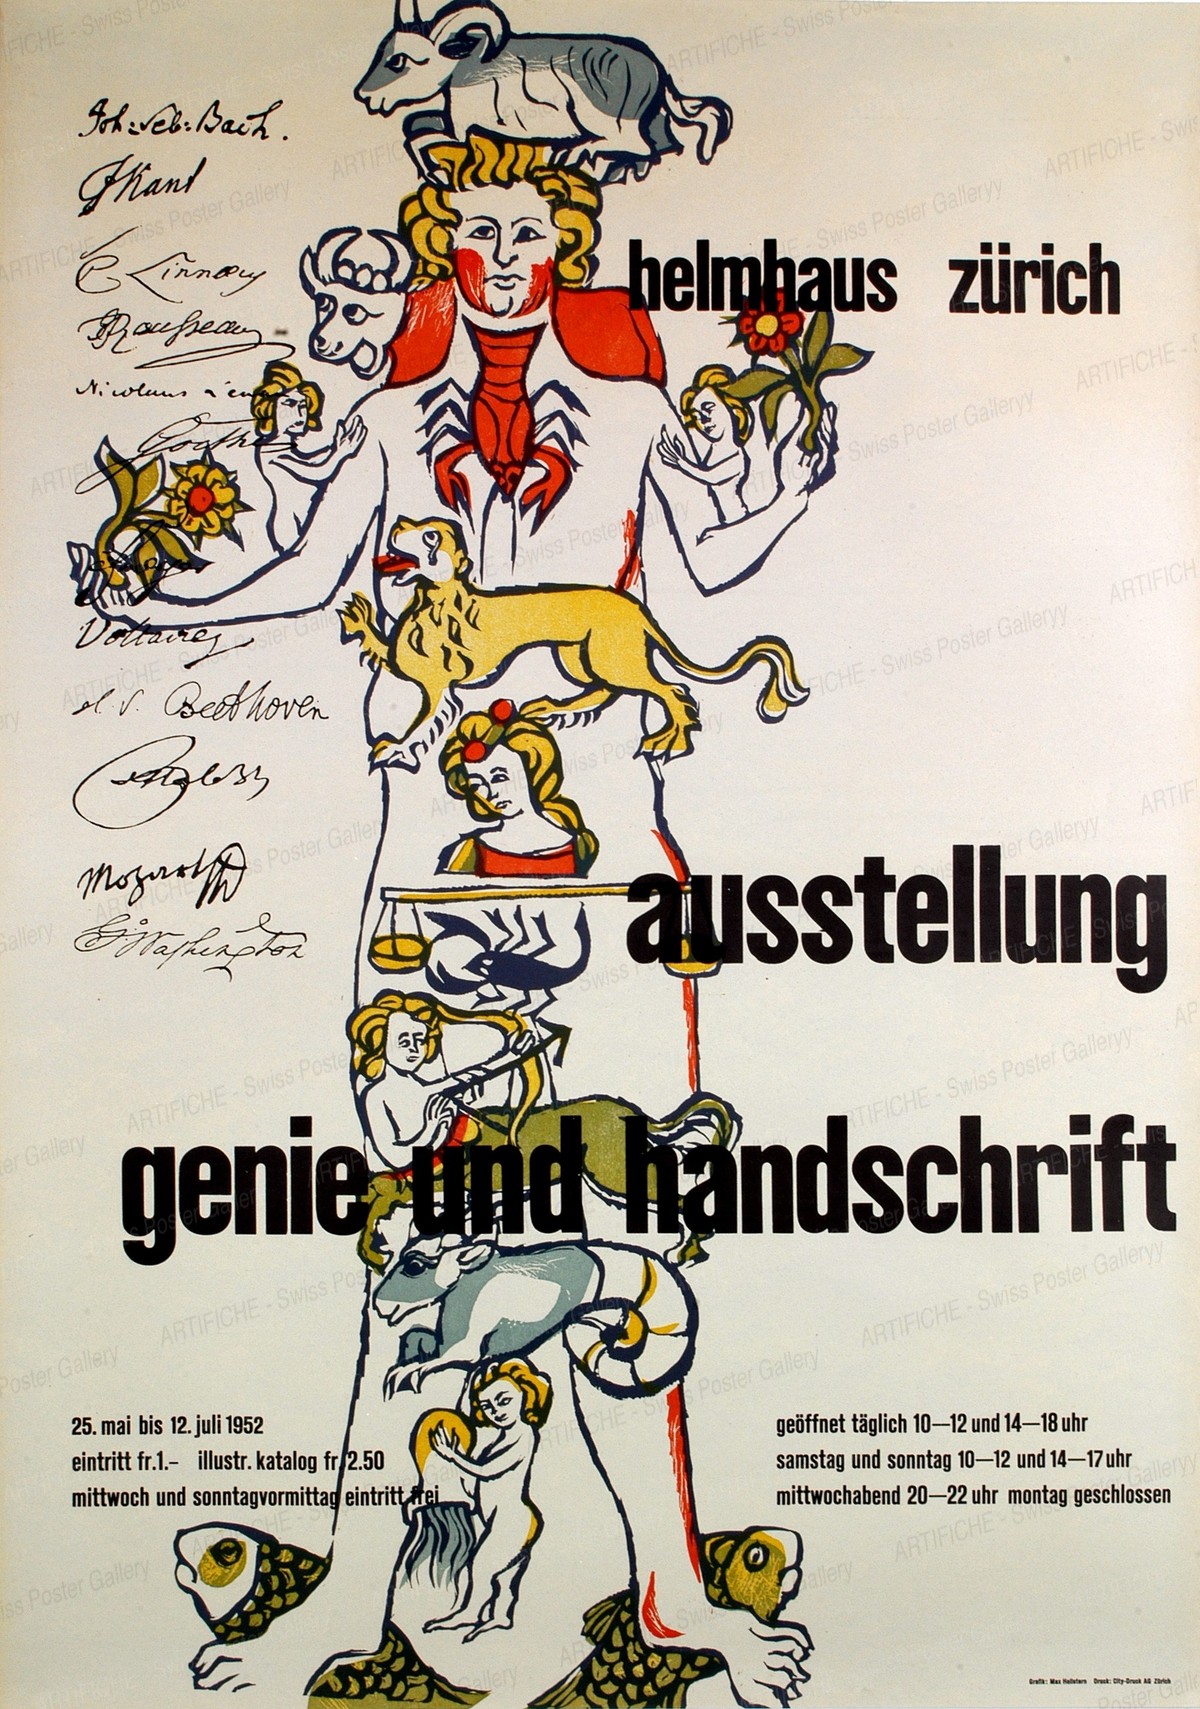 Helmhaus Zürich „Genie & Handschrift“, Max Hellstern